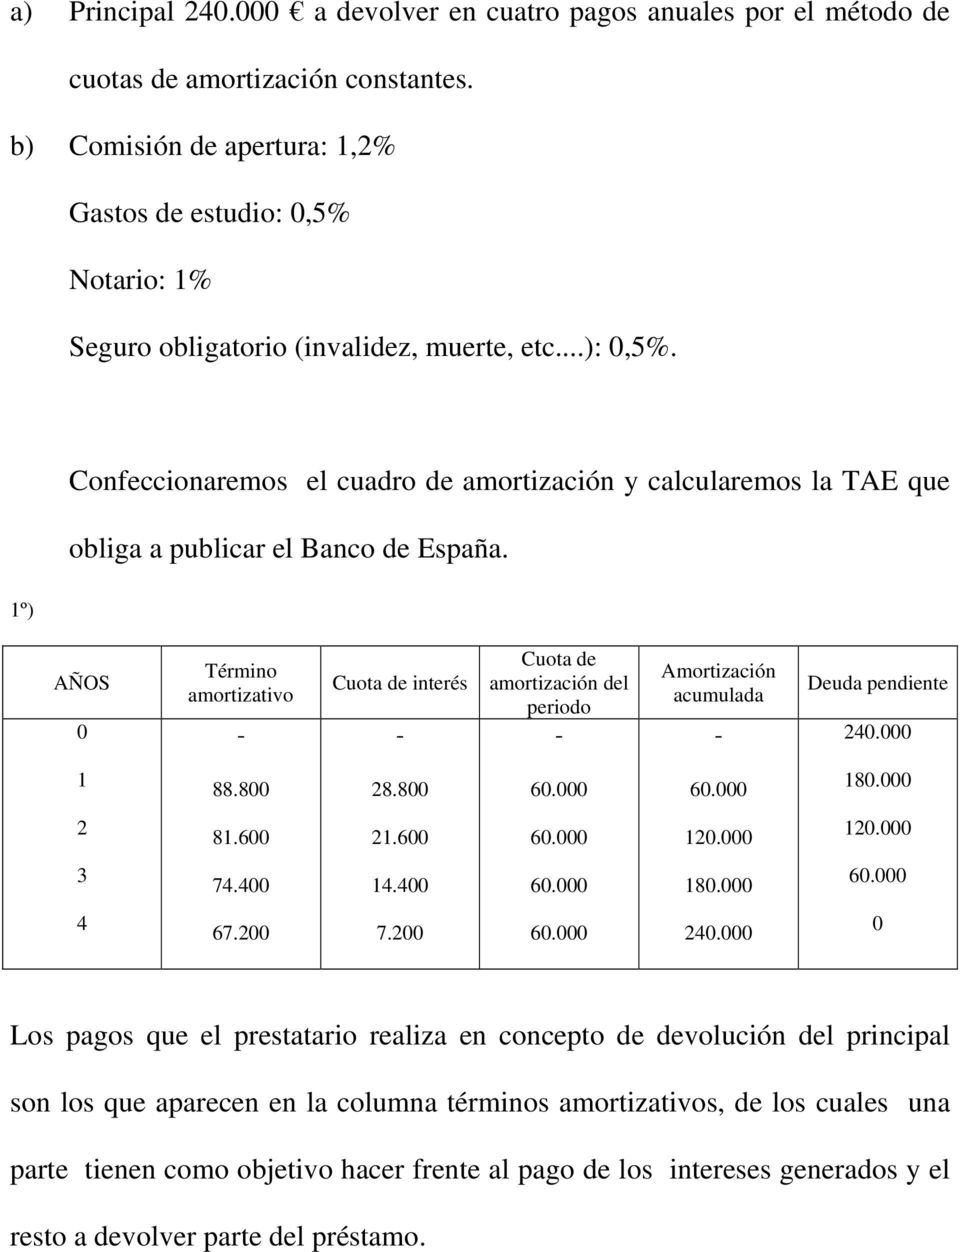 1º) Confeccionaremos el cuadro de amortización y calcularemos la TAE que obliga a publicar el Banco de España.